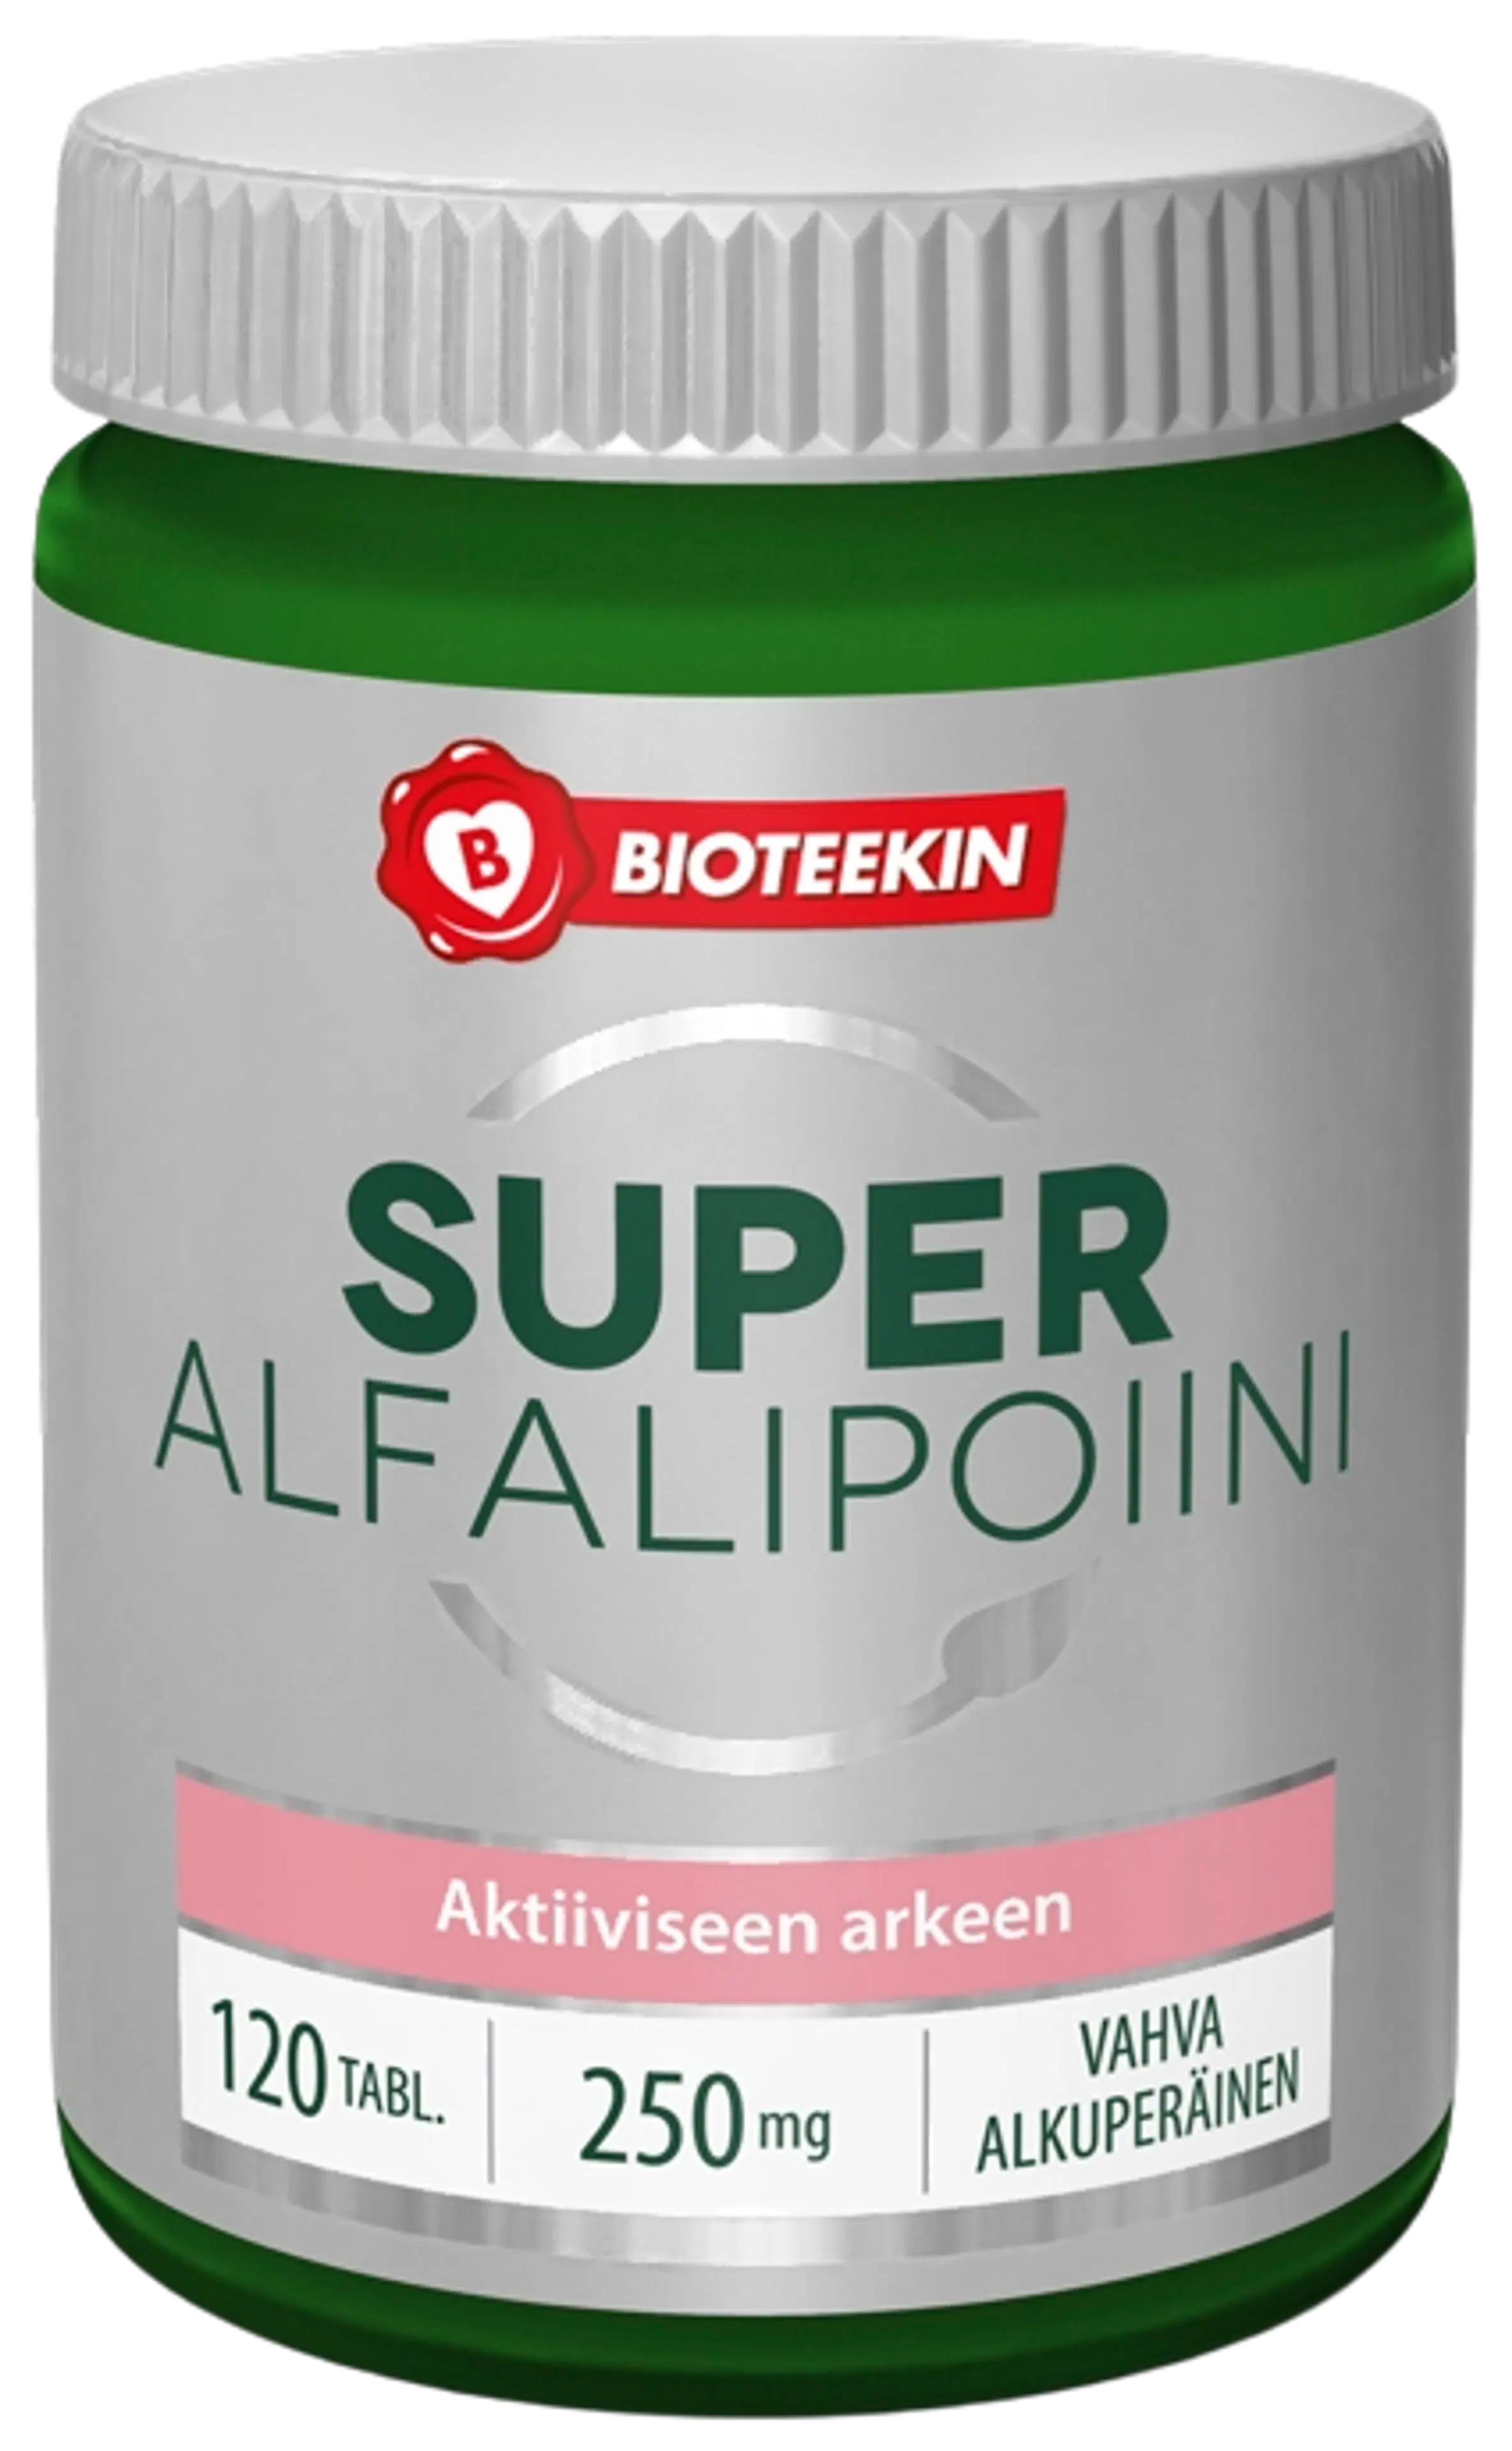 Bioteekin Super Alfalipoiini Vahva 250 mg antioksidantti 120 tabl.